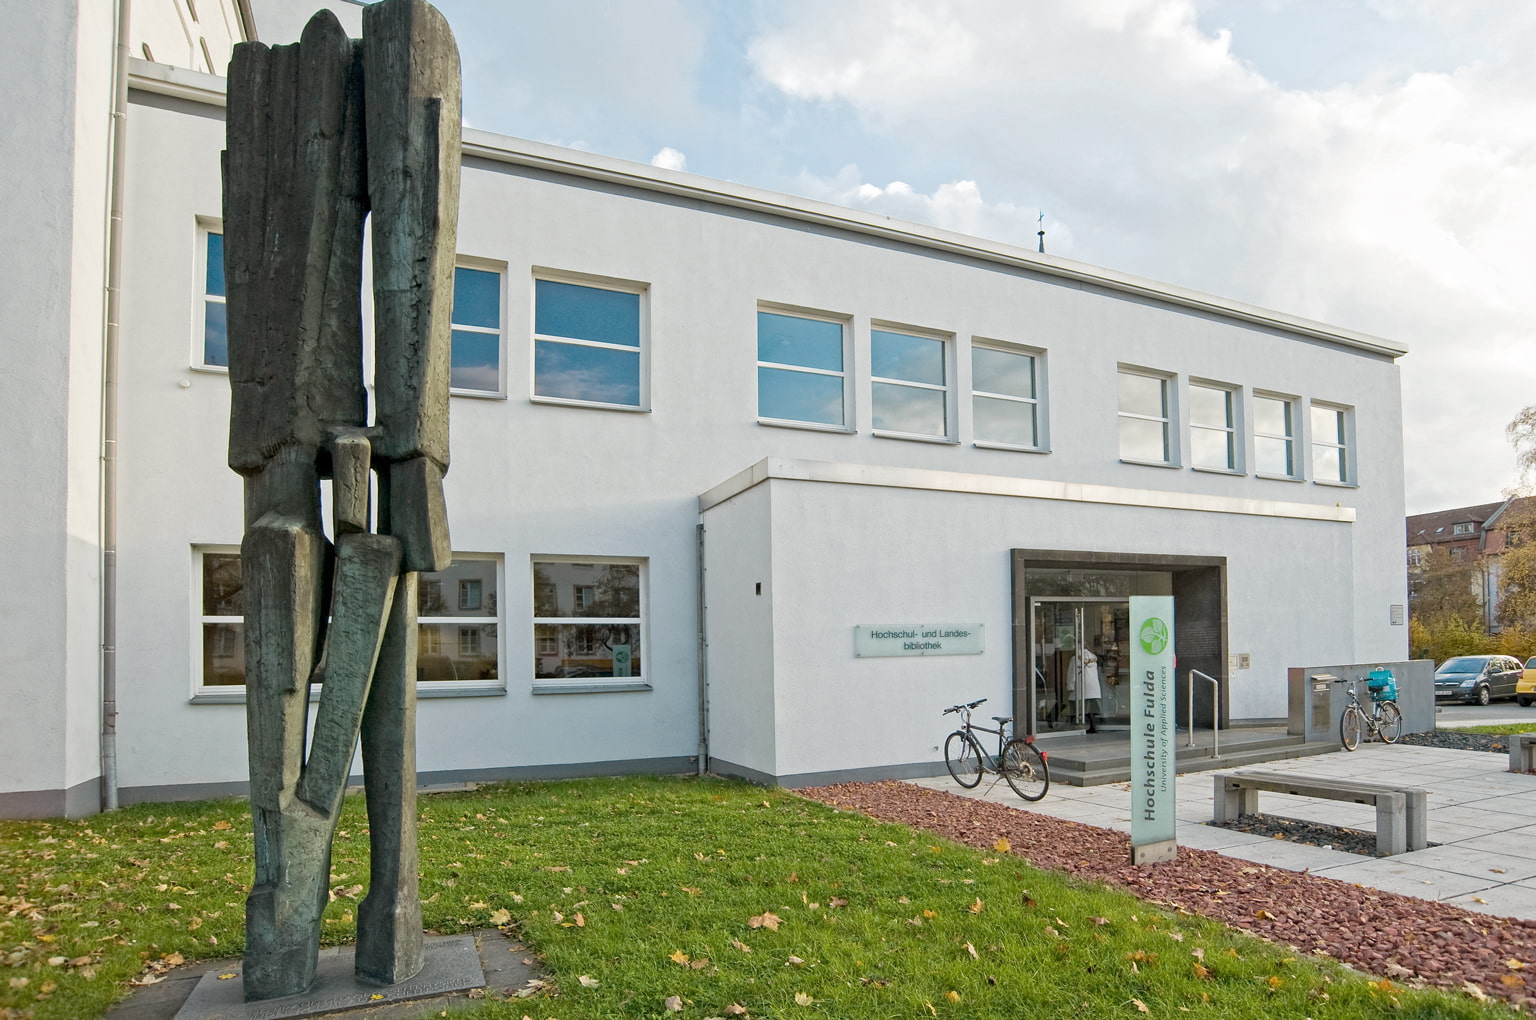 Schausammlung der Hochschul- und Landesbibliothek - Tourismus Fulda